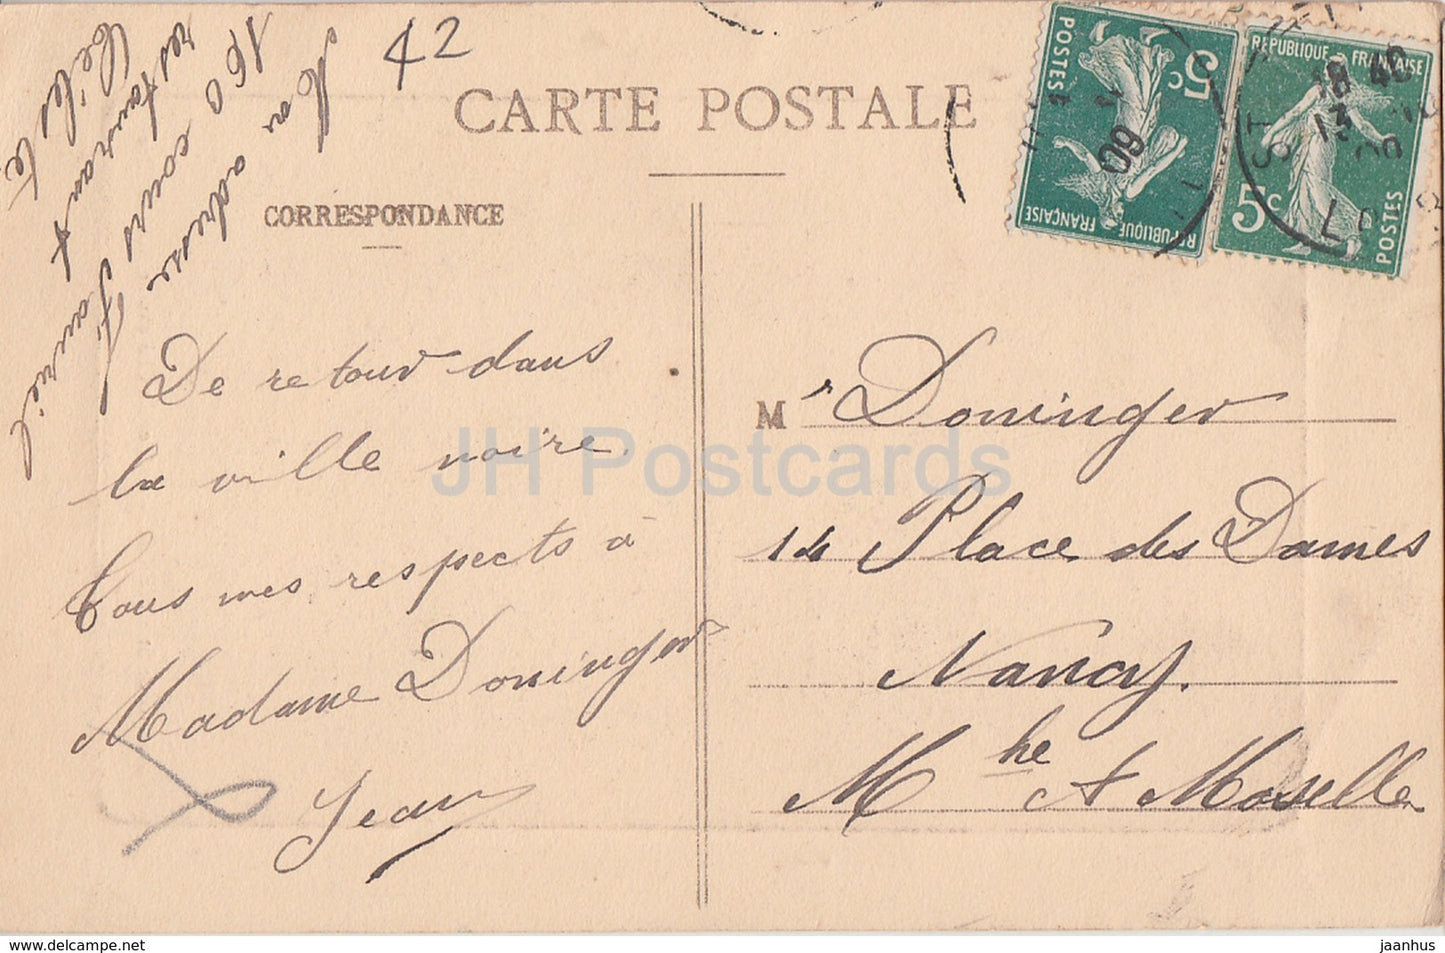 Environs de St Etienne - Ruines du Château Rochetaillee - ruines du château - carte postale ancienne - 1909 - France - utilisé